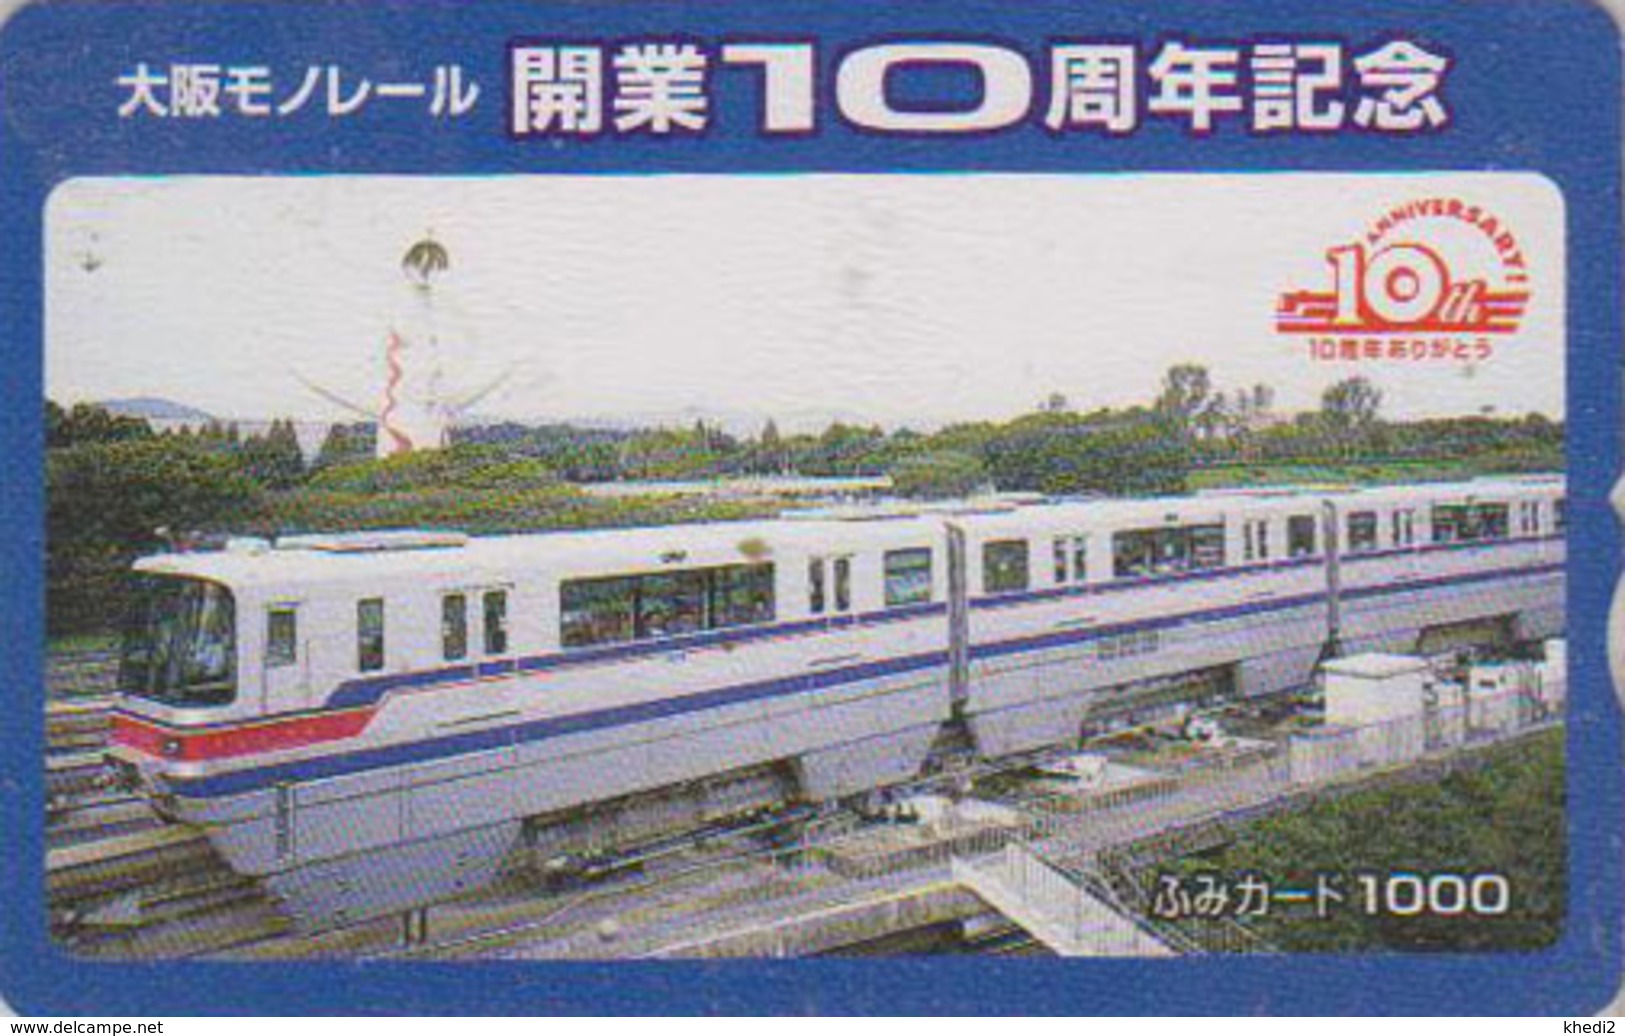 Carte Prépayée Japon - TRAIN MONORAIL - ZUG Eisenbahn - TREIN - Japan Prepaid Fumi Card - 3316 - Vuurtorens